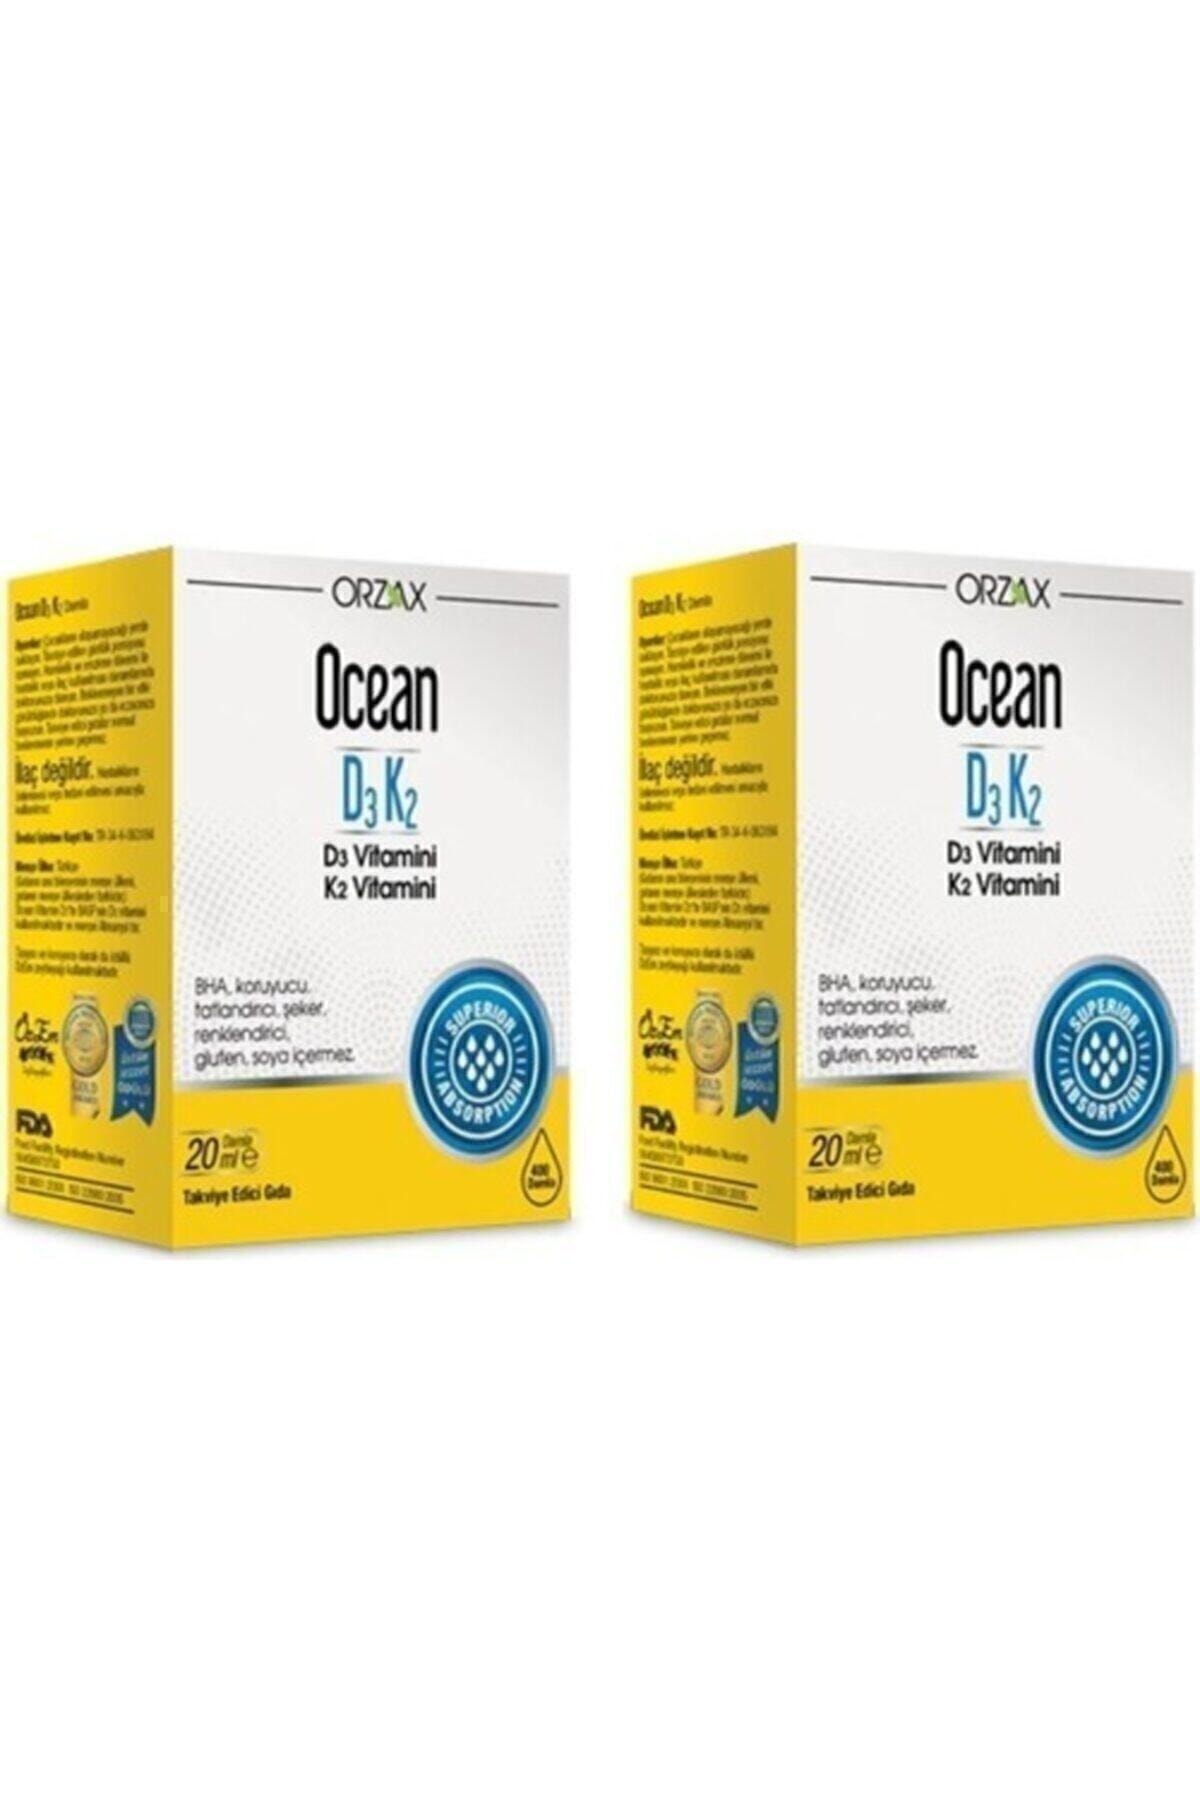 Ocean Ocean Vitamin D3k2 Damla 20 ml 2'li Paket